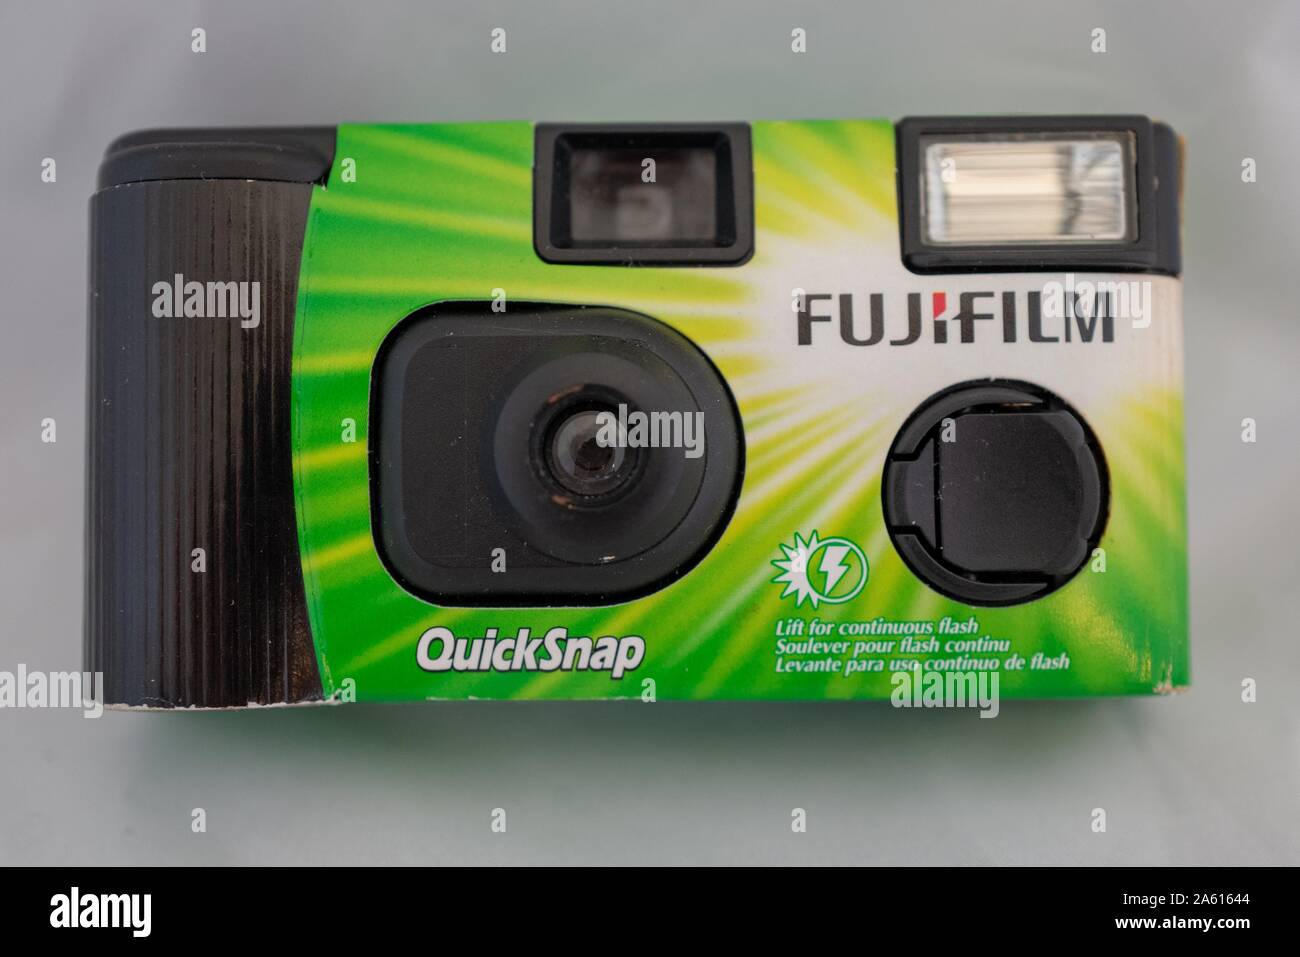 Gros plan de l'appareil photo jetable Quicksnap du fabricant de films Fujifilm sur fond blanc, 29 août 2019. () Banque D'Images